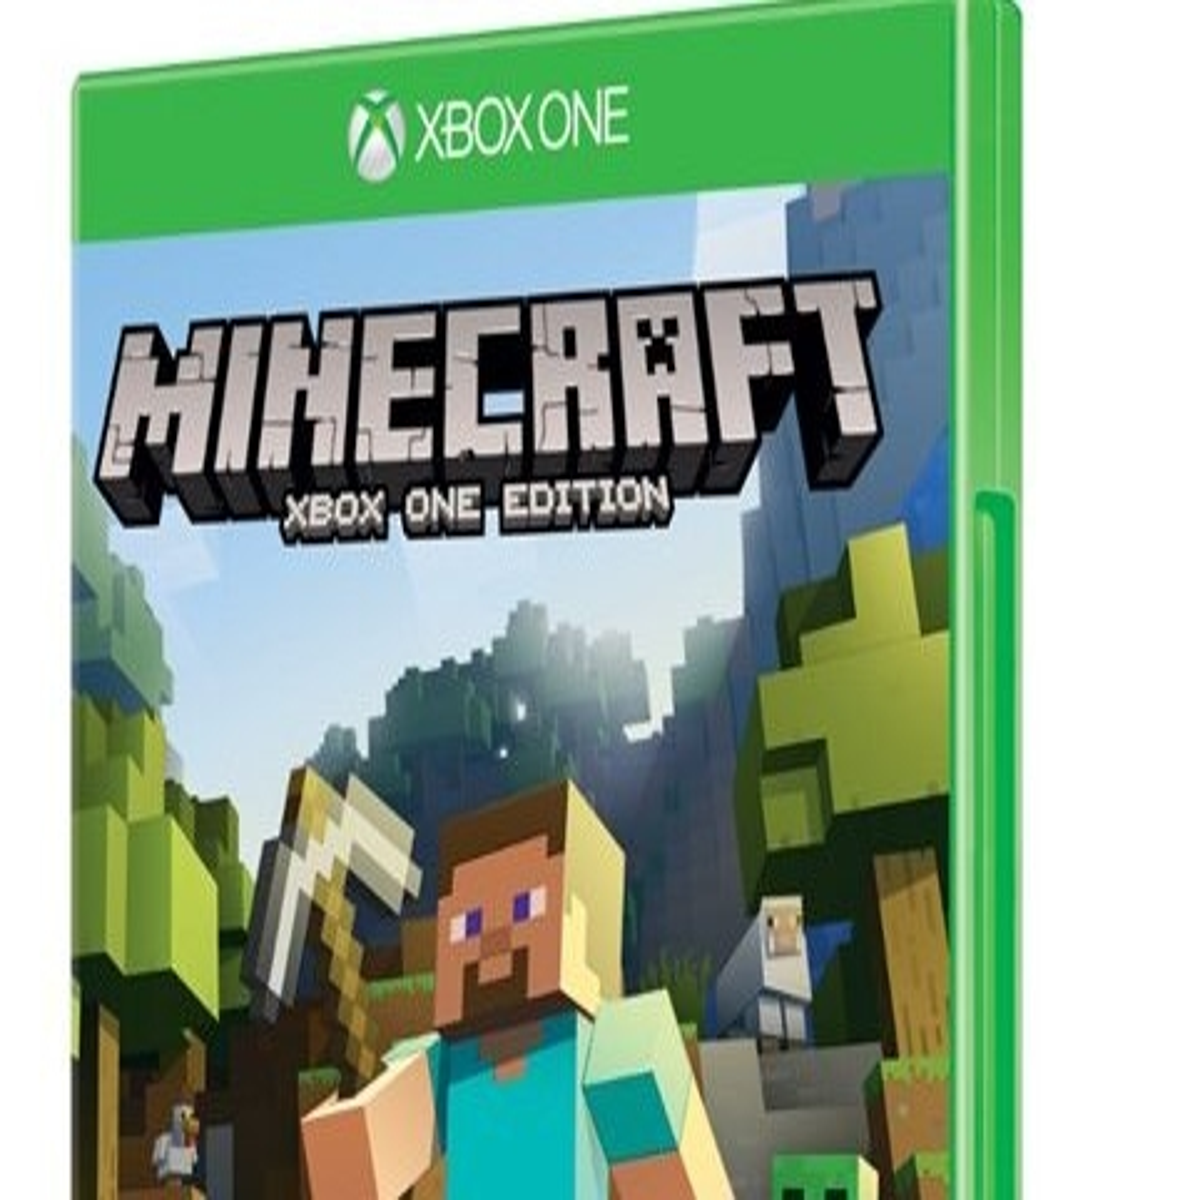 Minecraft do Xbox 360 receberá chefe final em próxima atualização